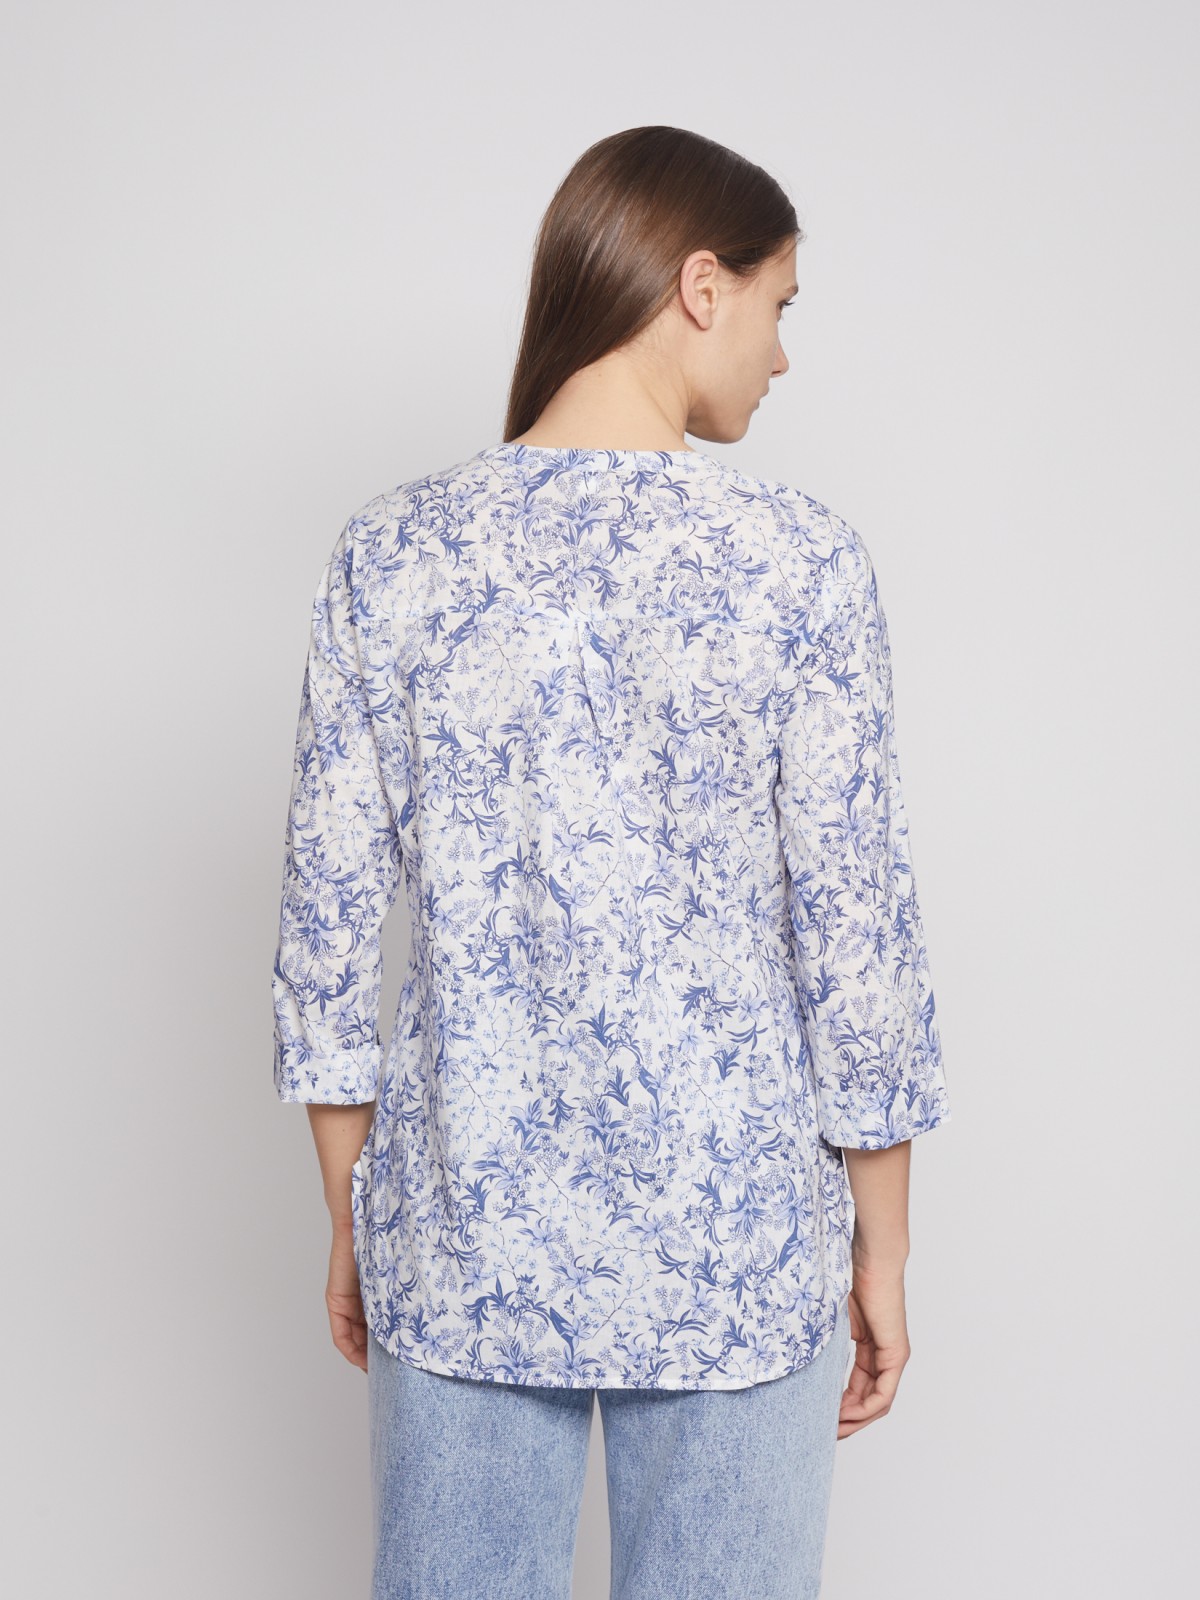 Блузка с  длинными рукавами zolla 022241147053, цвет светло-голубой, размер S - фото 6